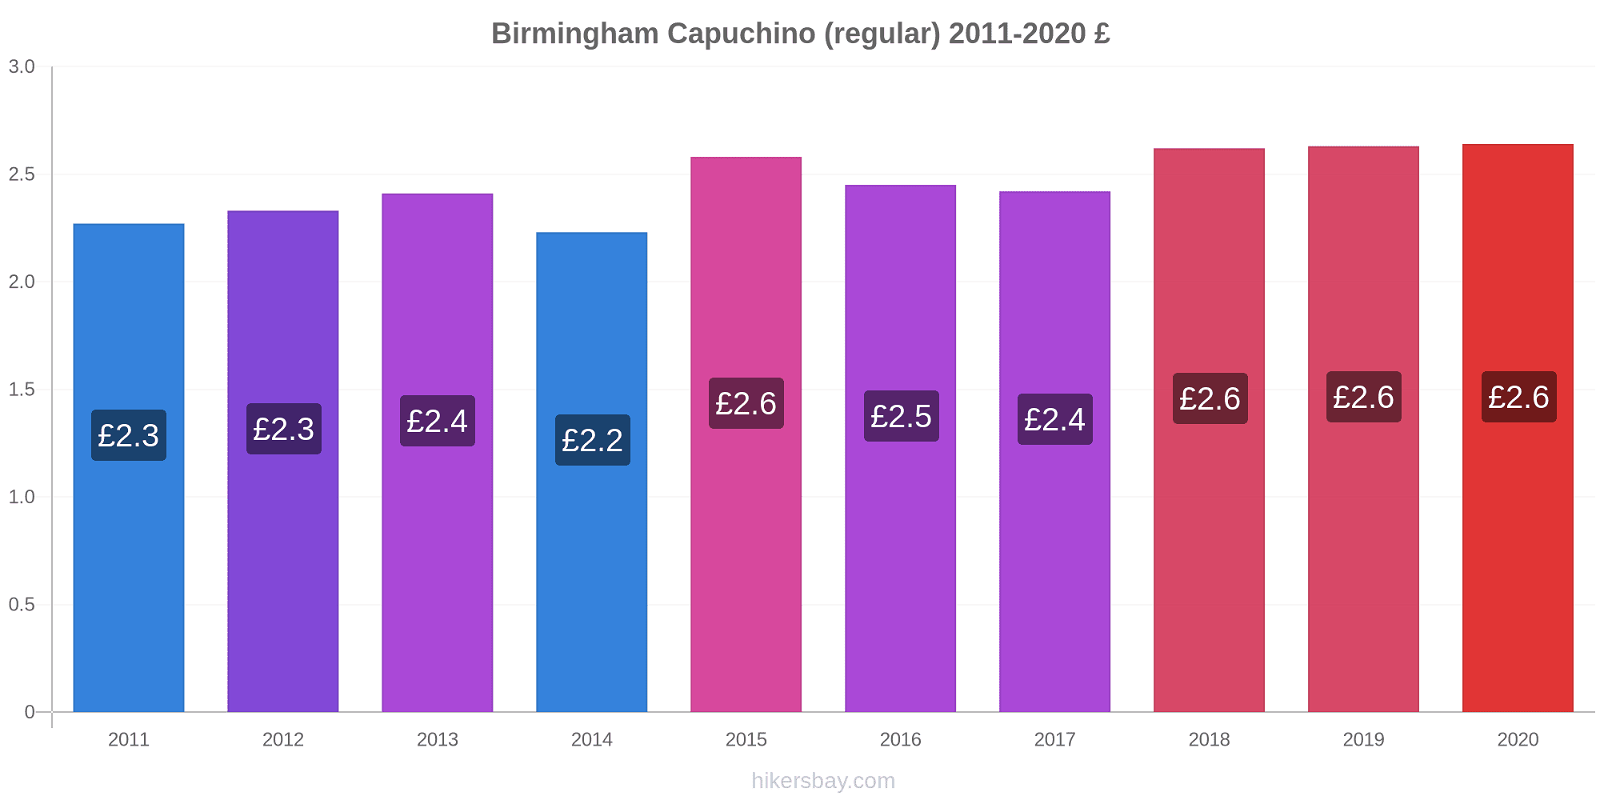 Birmingham cambios de precios Capuchino (regular) hikersbay.com